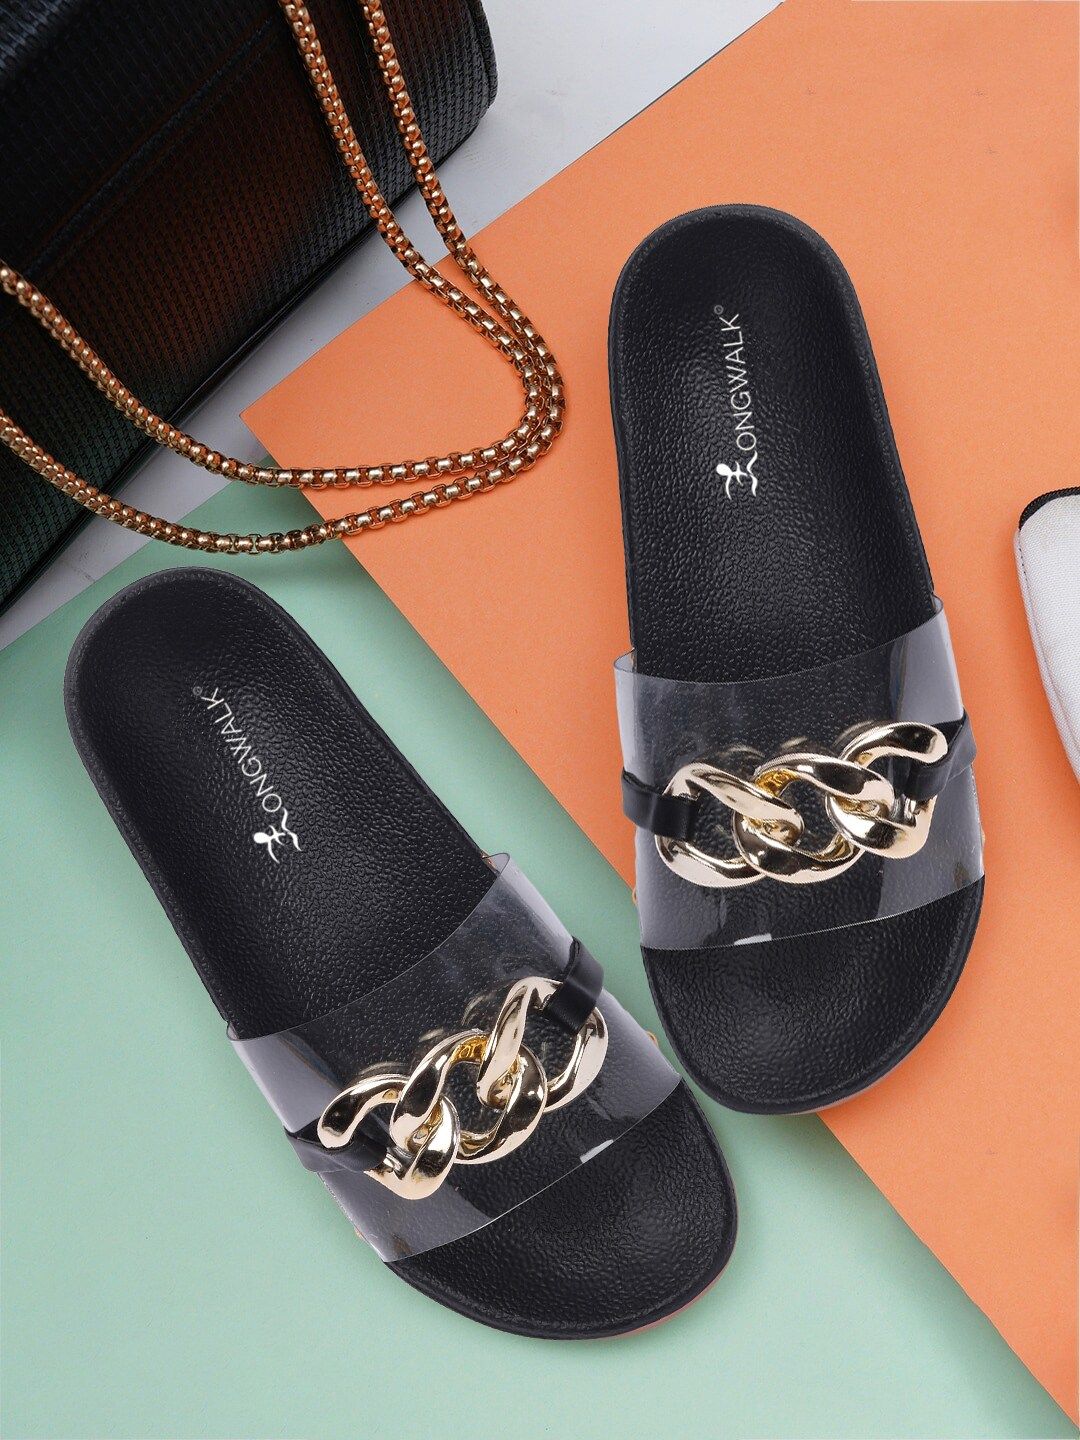 Longwalk Black & Gold-Toned Embellished Flatform Sandals Price in India